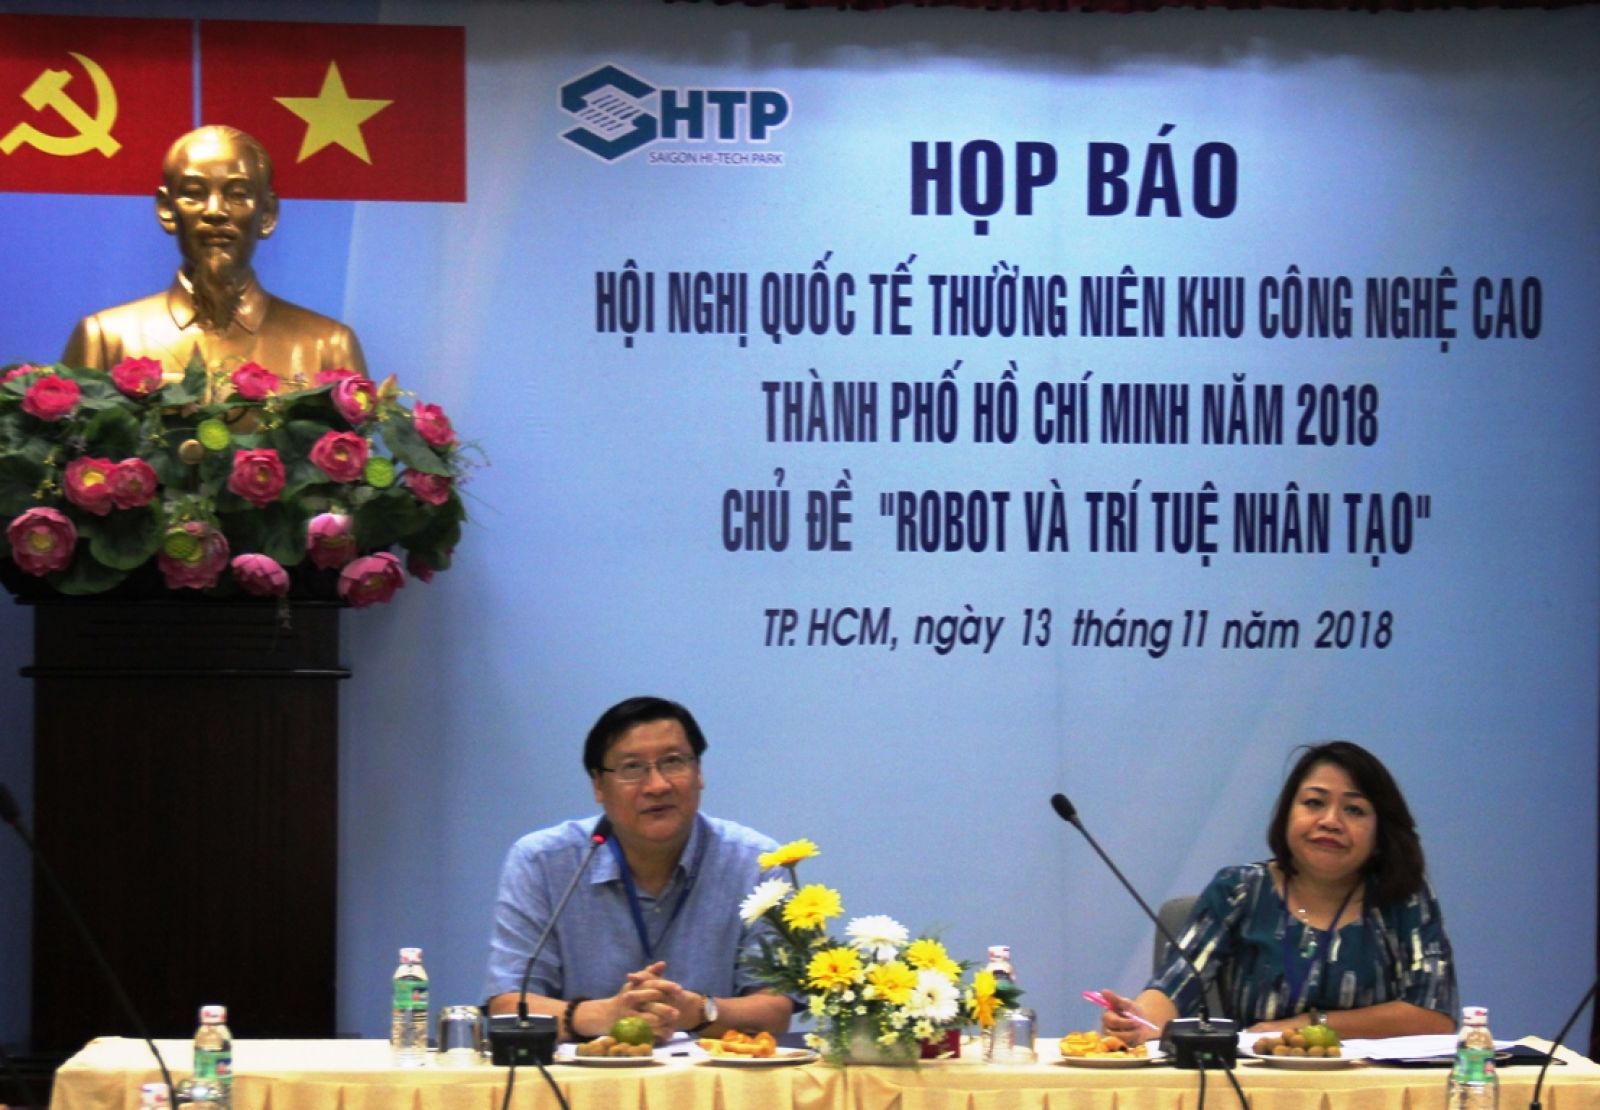 Phó Giáo sư - Tiến sĩ Lê Hoài Quốc, Trưởng ban SHPT thông tin về Hội nghị tại buổi họp báo